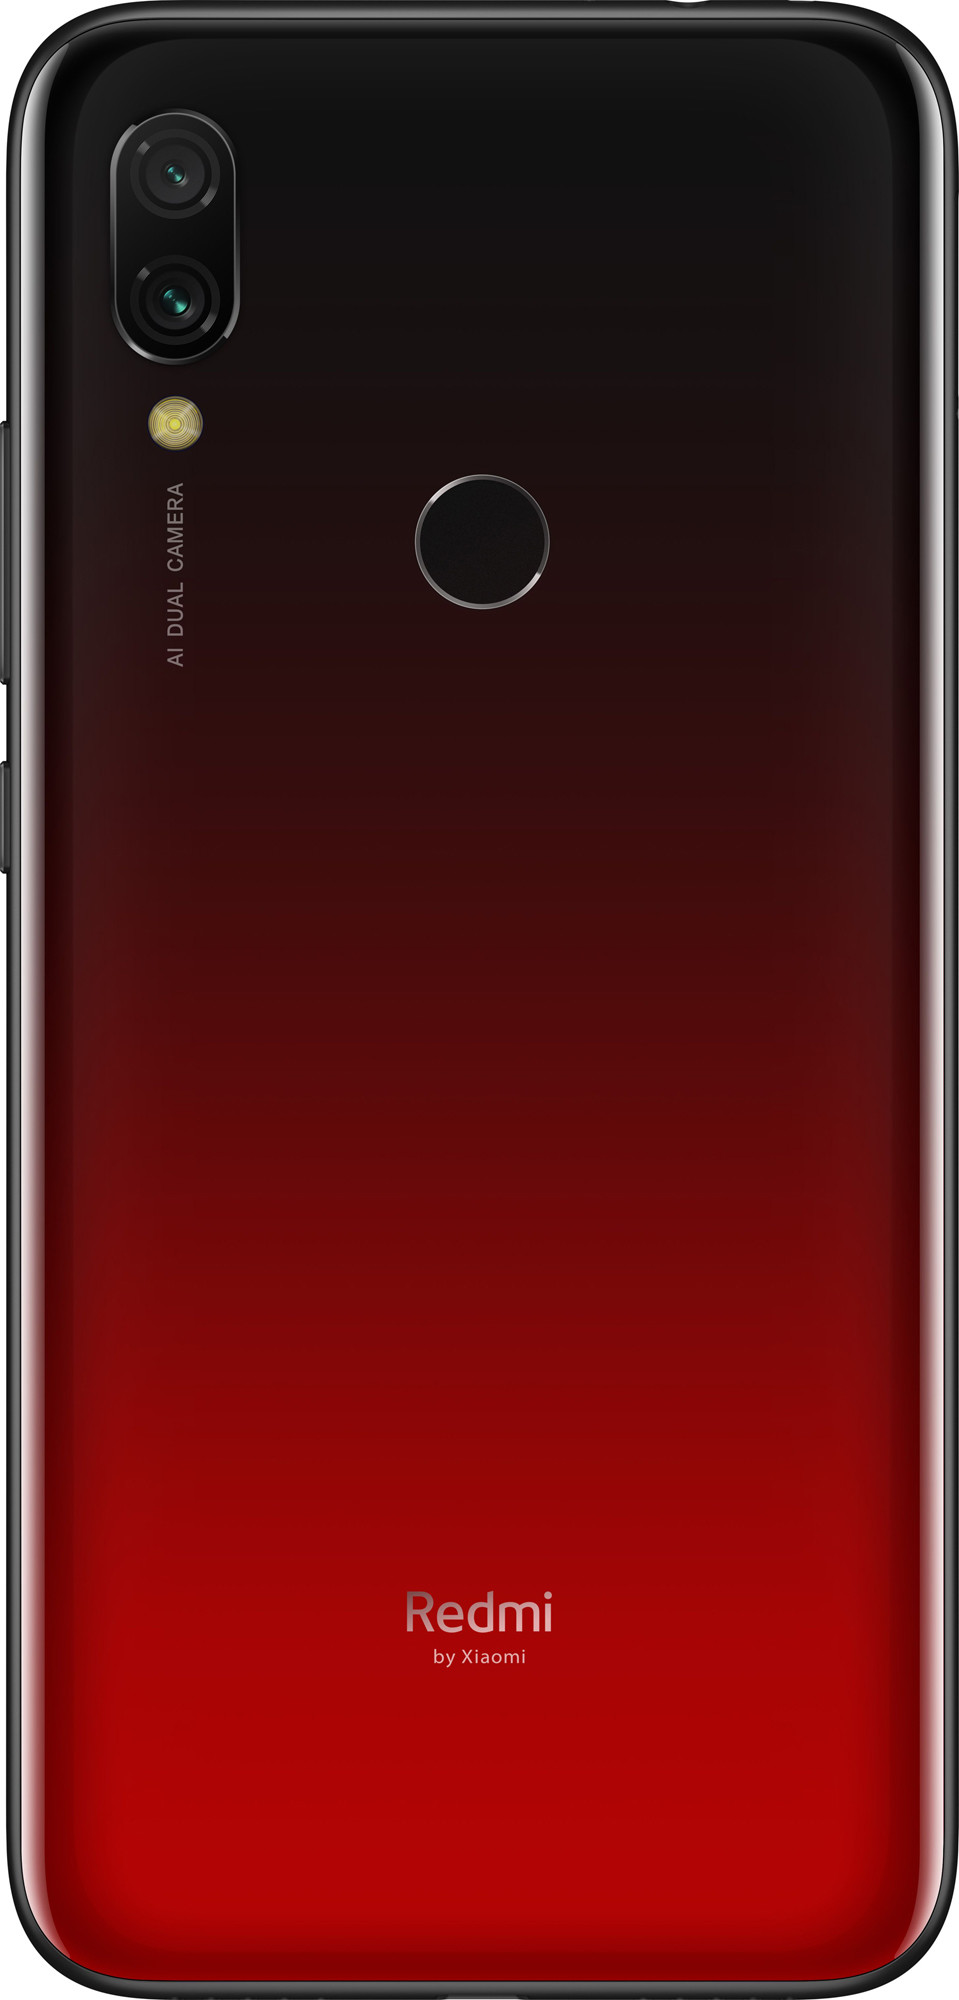 Xiaomi Redmi 7 3/32GB Red EU